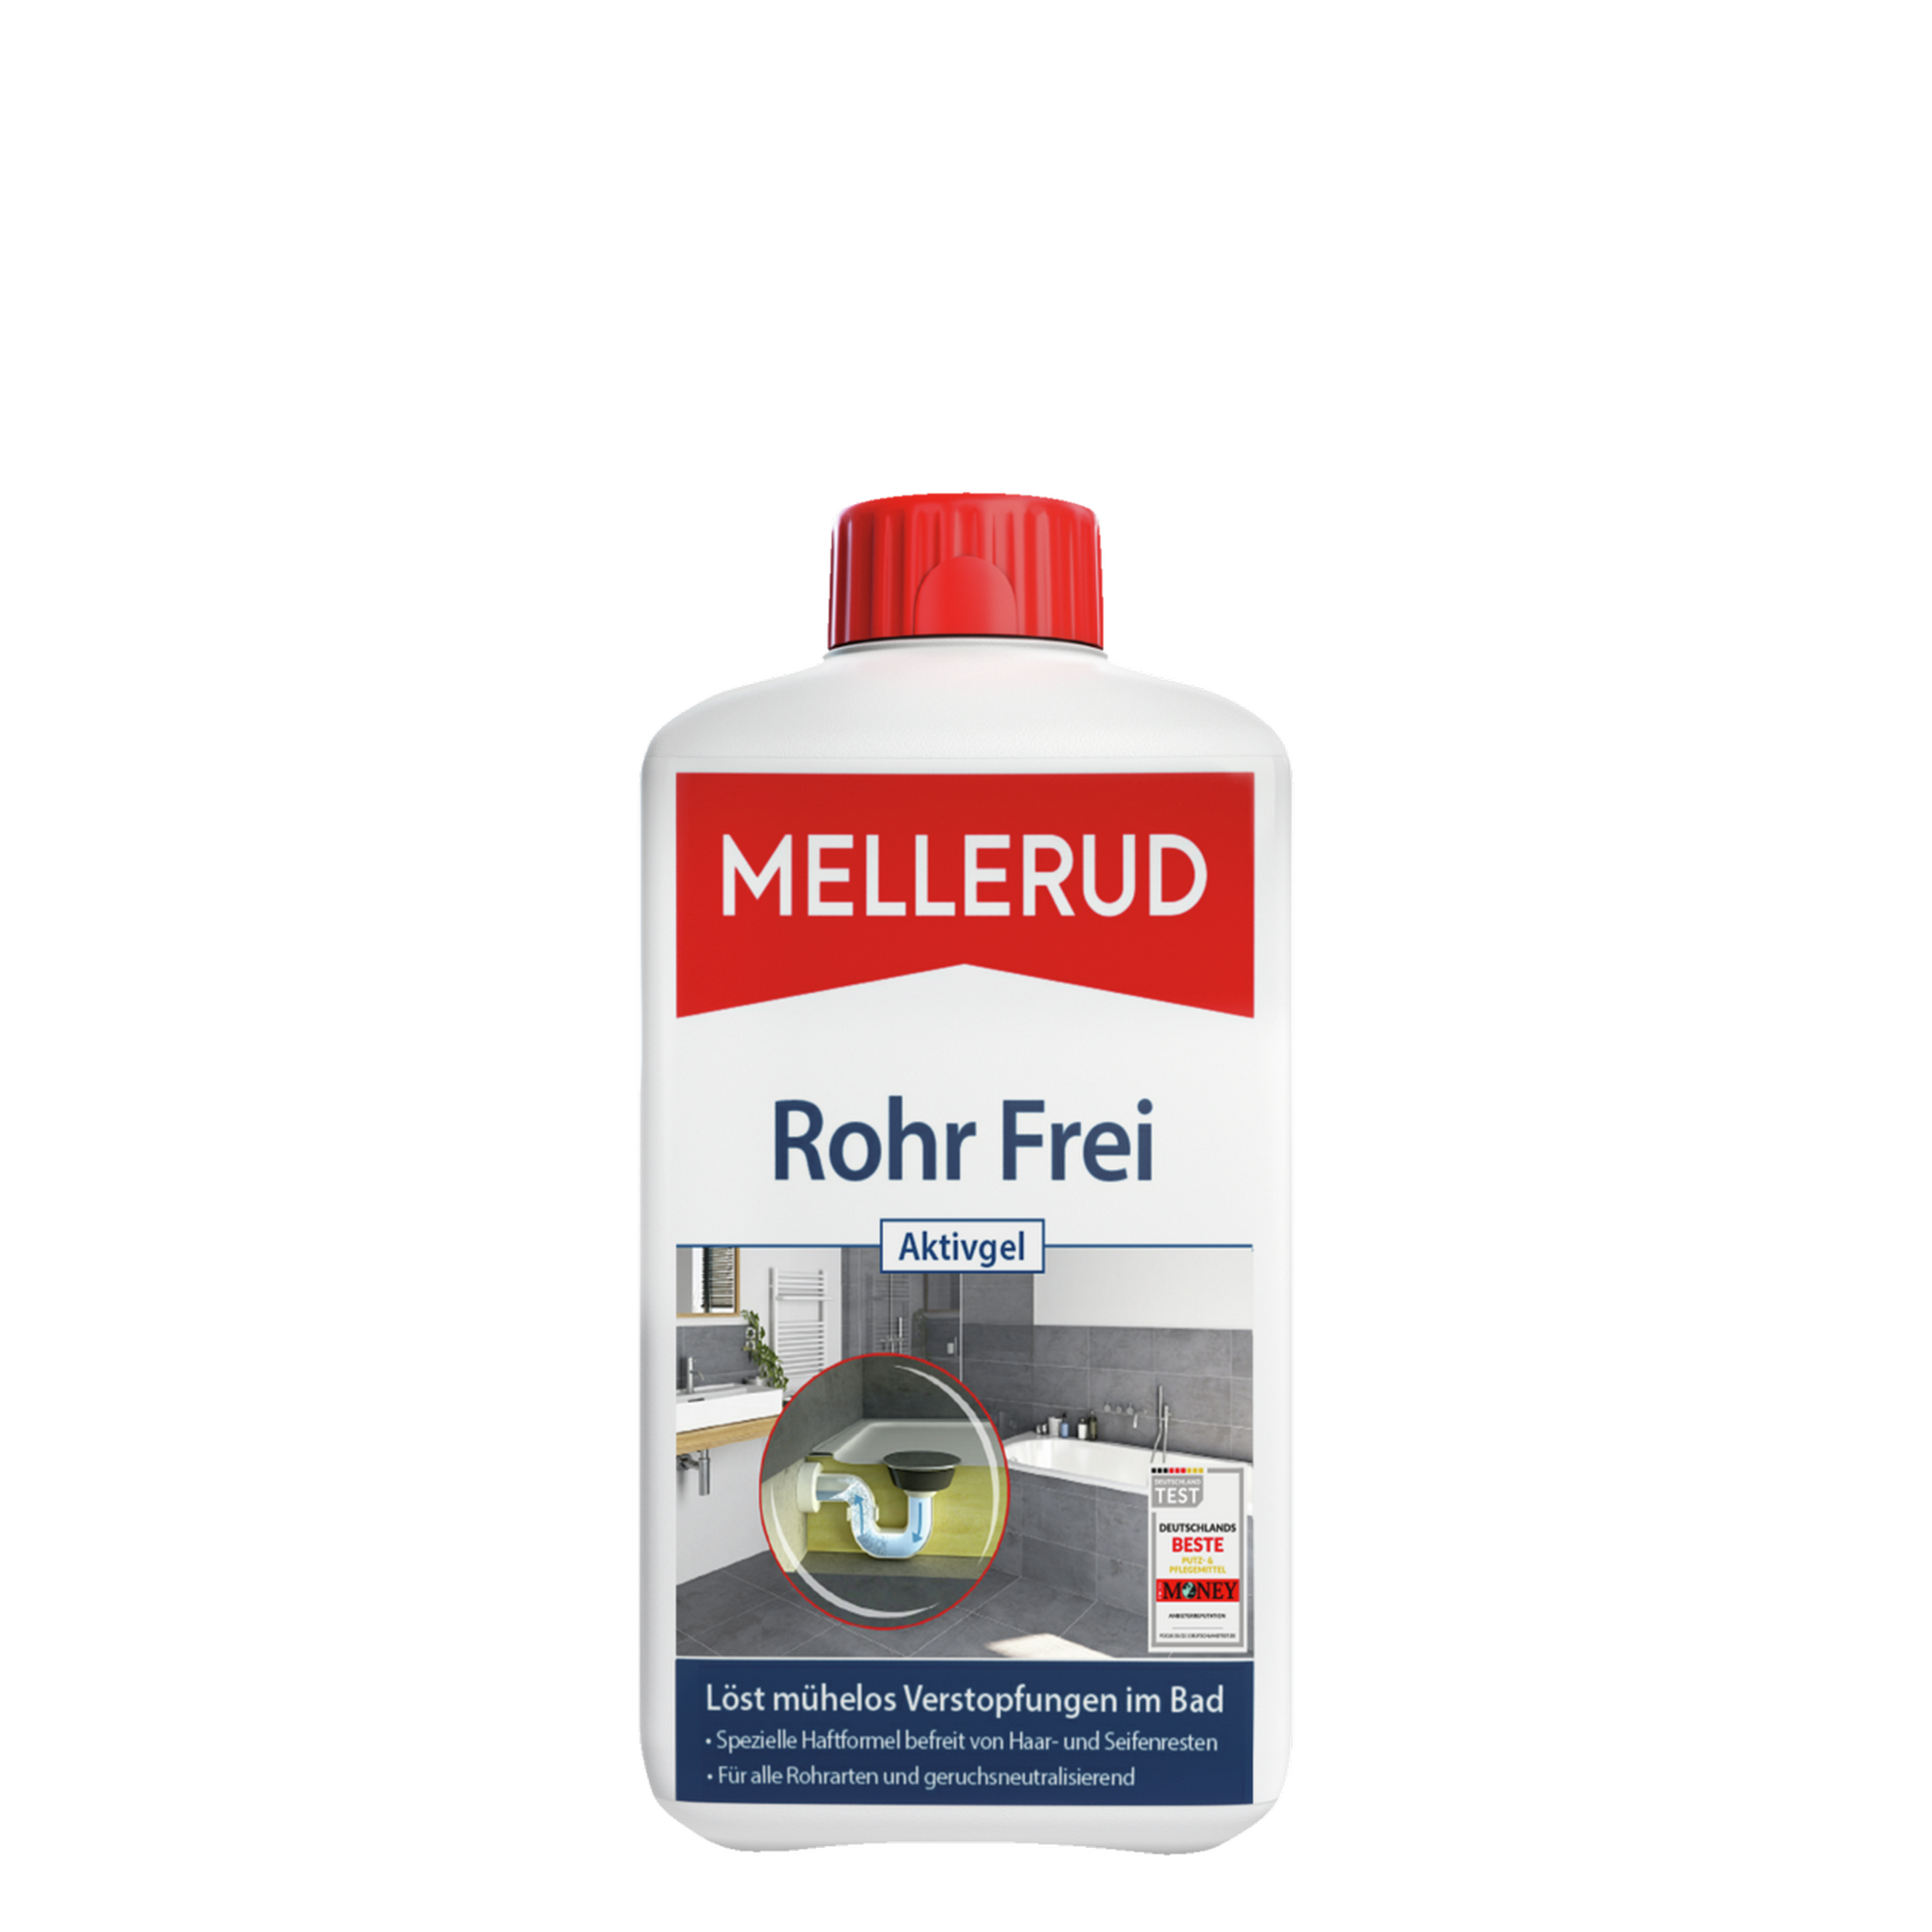 Rohr-Frei-Aktivgel "Spezialreiniger" 1.000 ml + product picture